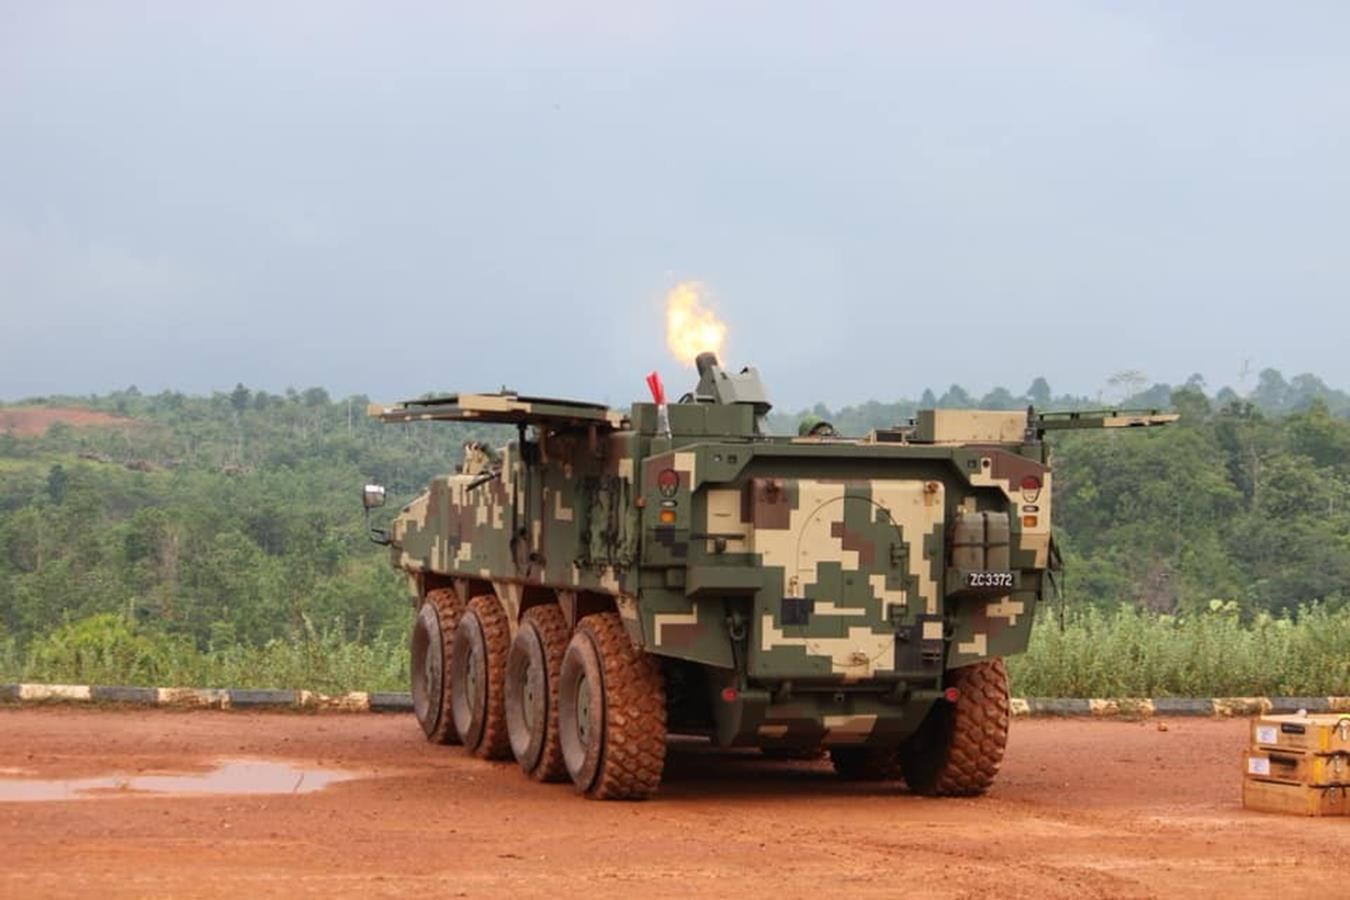 Malezyjski moździerz samobieżny od DefTech, AV8 Gempita z moździerzem Thales, AV8 Gempita